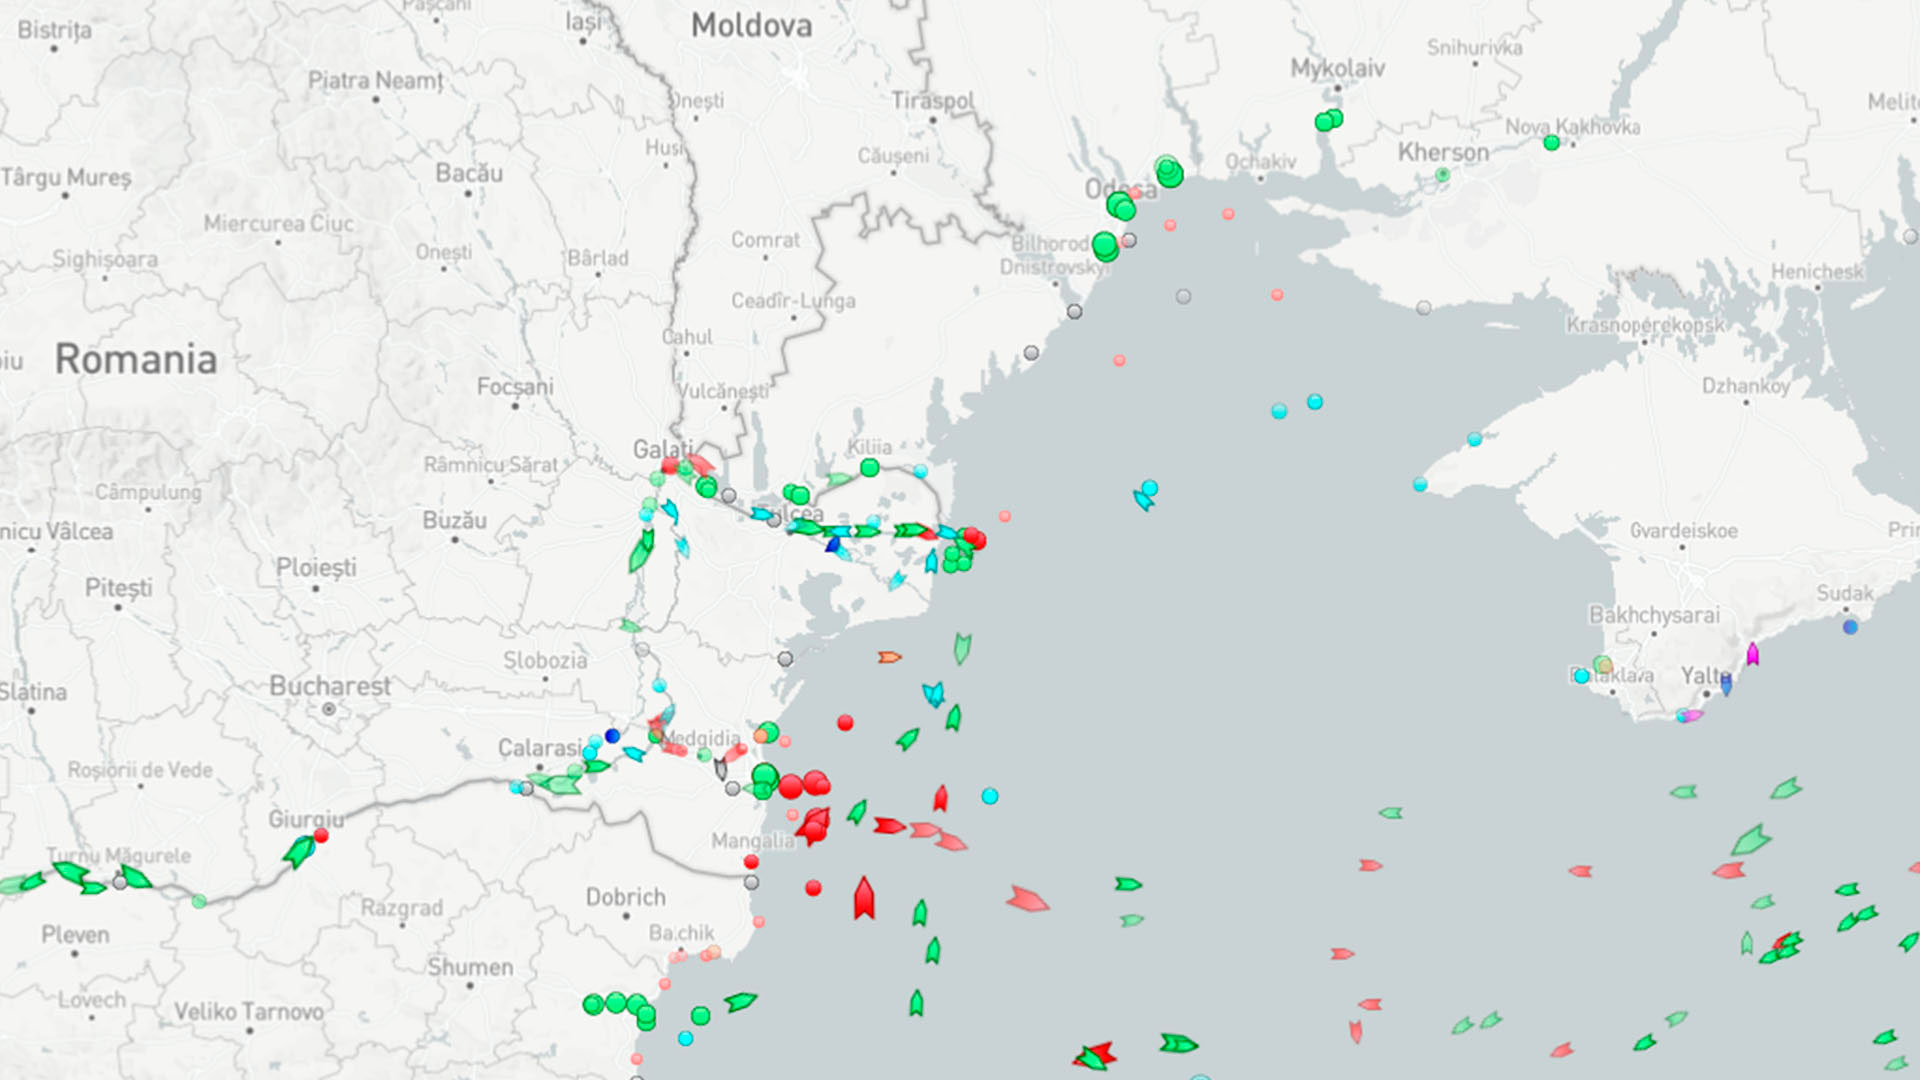 Un rastreador de buques marítimos mostraba un barco de rescate ruso identificado como SPK-46150 en ruta hacia el lugar 